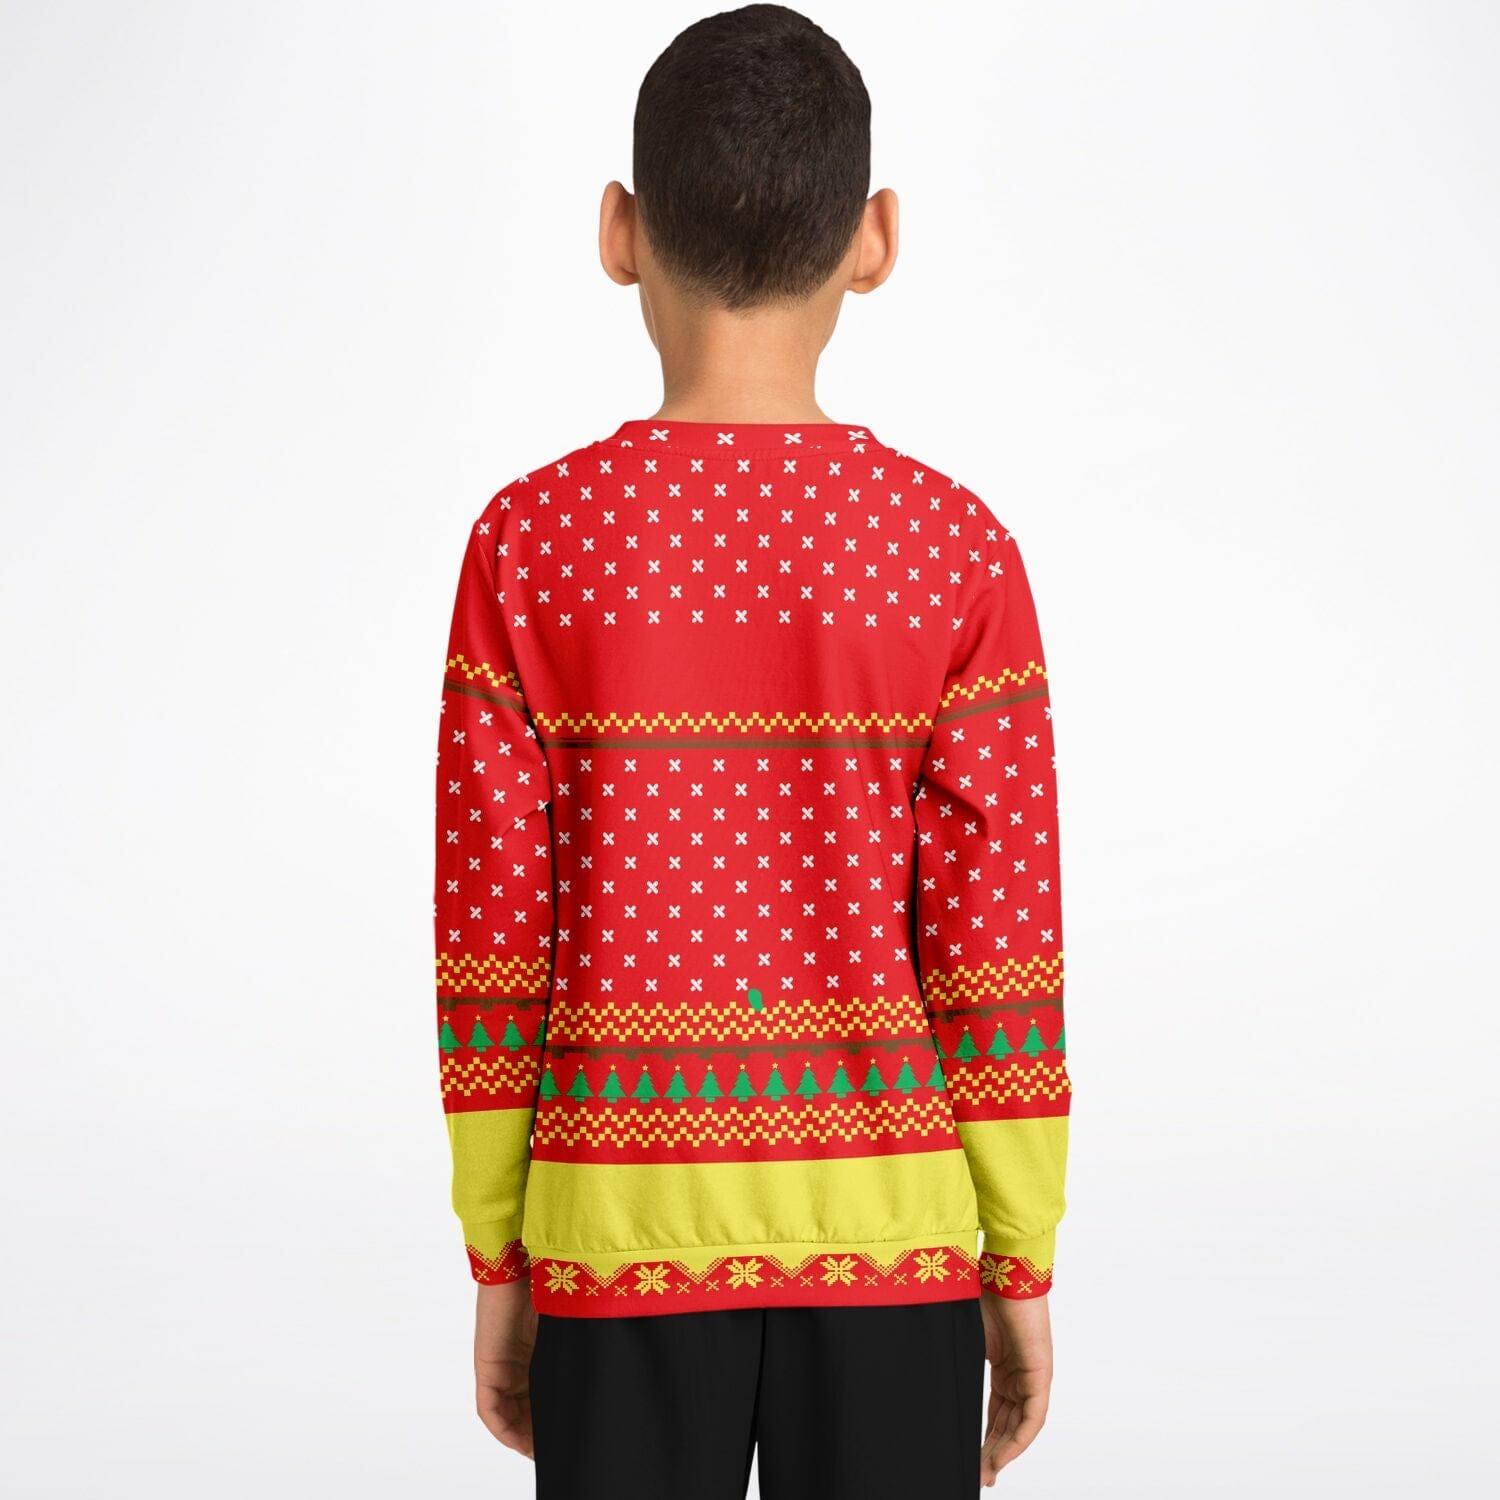 Too Lit to Quit Kids Unisex Ugly Christmas Sweatshirt - TopKoalaTee